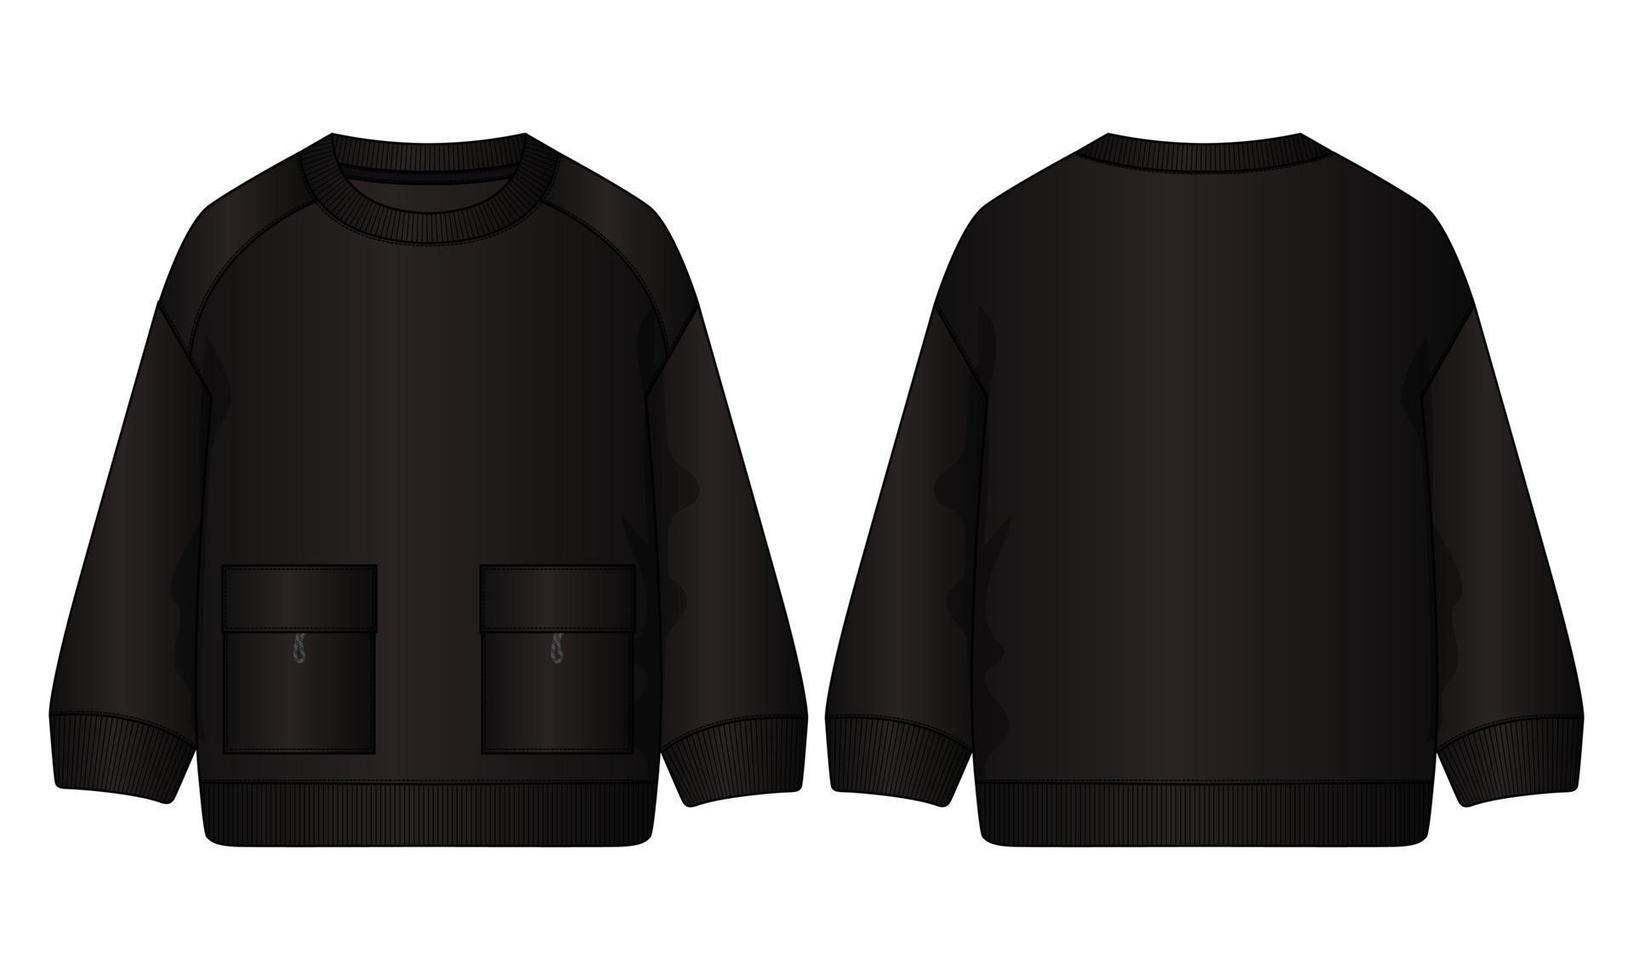 Langarm-Sweatshirt technische Mode flache Skizze Vektor Illustration Vorlage Vorder- und Rückansichten